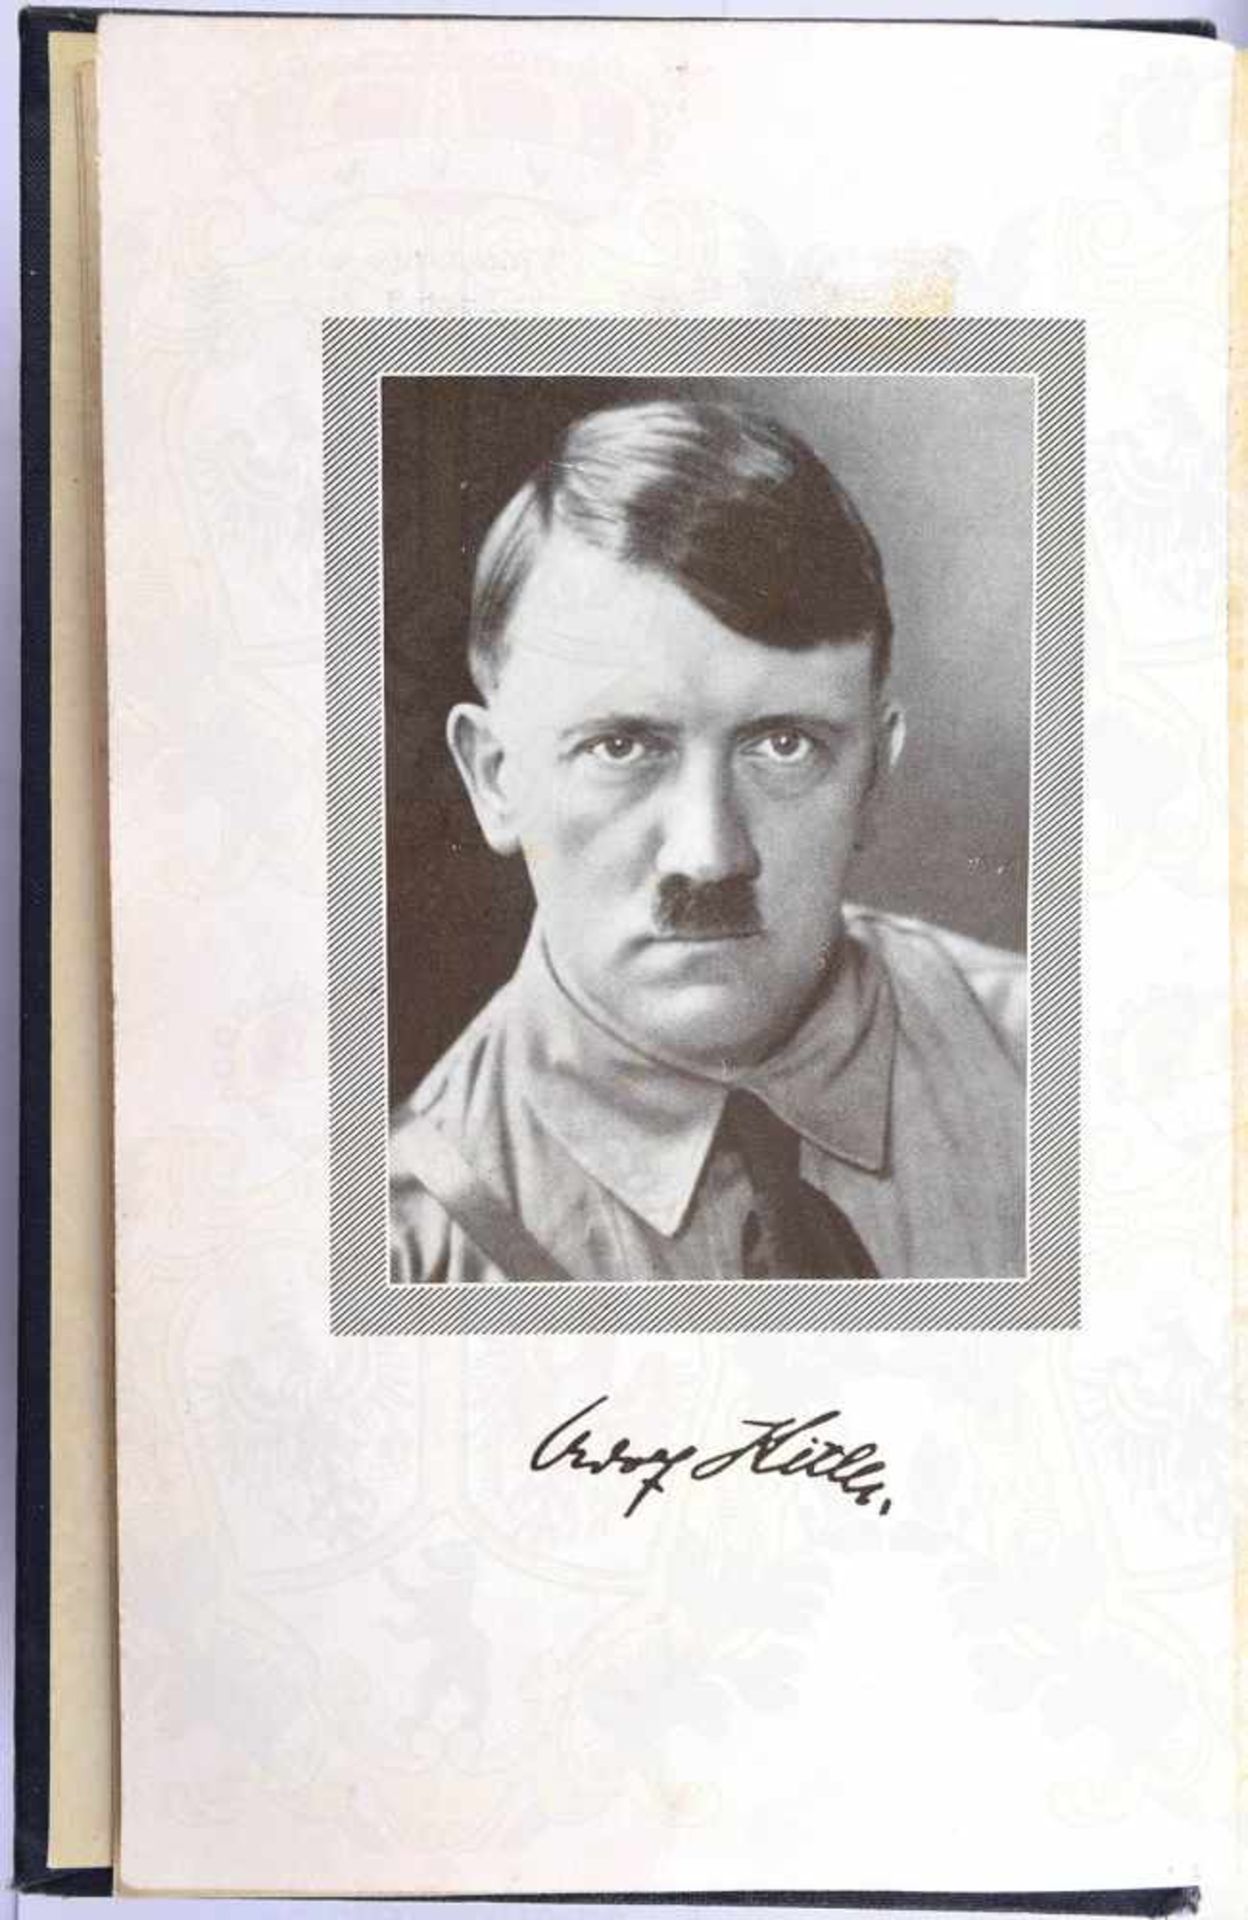 MEIN KAMPF, Adolf Hitler, Volksausgabe, Eher Verlag, München 1938, 781 S., 1 Portrait, goldgepr., - Bild 2 aus 3